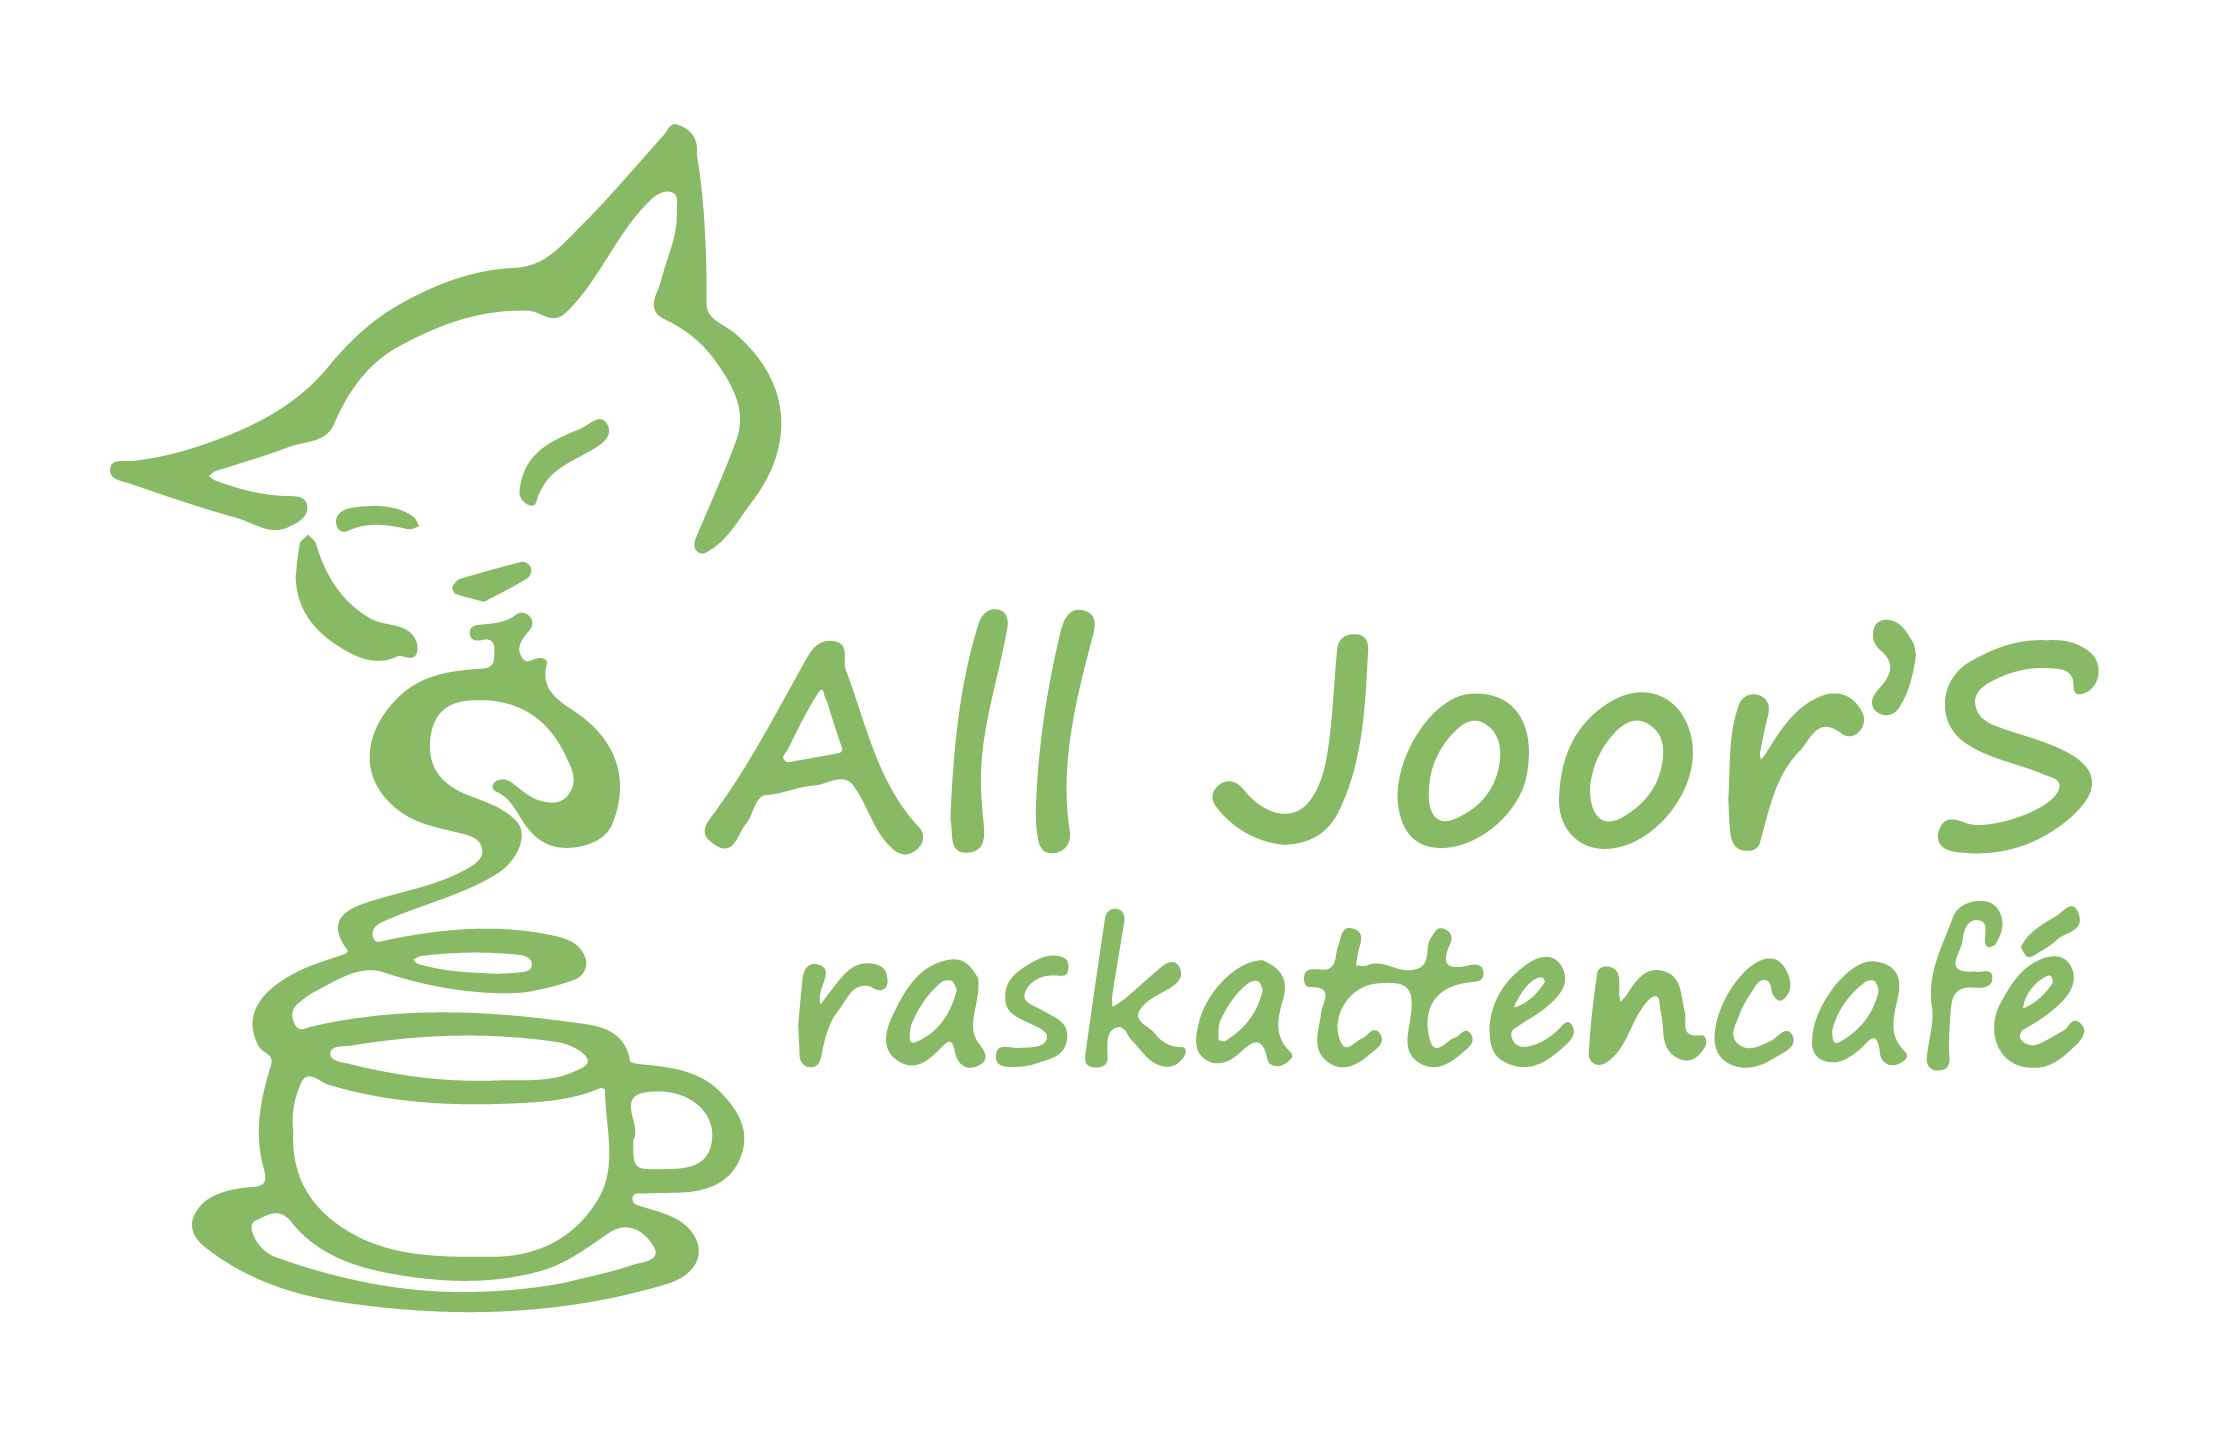 All Joor's raskattencafé